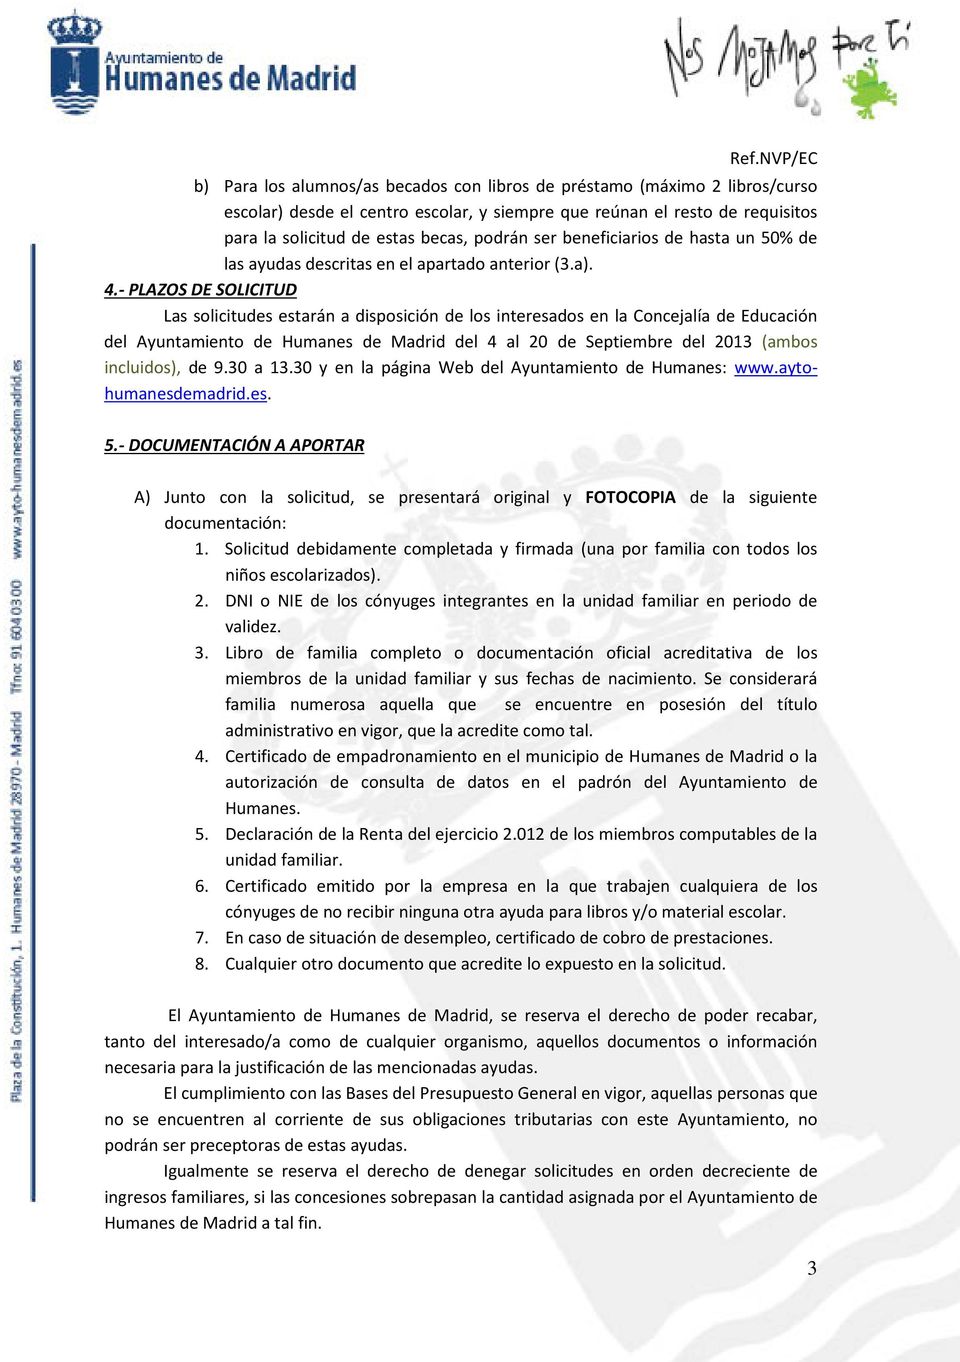 - PLAZOS DE SOLICITUD Las solicitudes estarán a disposición de los interesados en la Concejalía de Educación del Ayuntamiento de Humanes de Madrid del 4 al 20 de Septiembre del 2013 (ambos